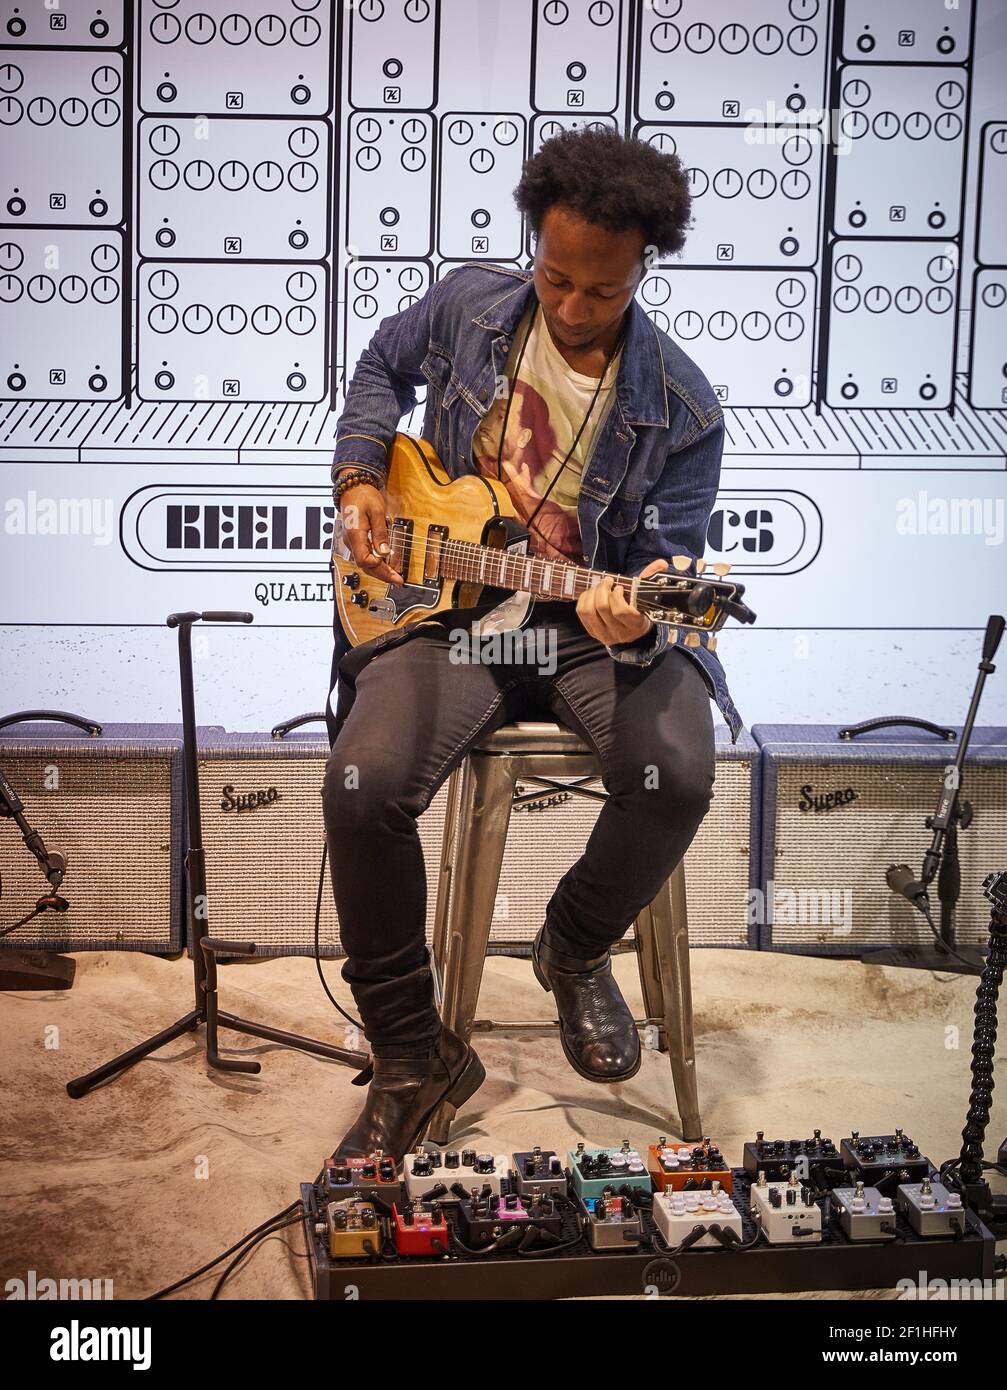 Chitarrista elettrico maschio nero seduto sullo sgabello che suona Keeley Pedali di chitarra al Musical Instrument Convention Foto Stock